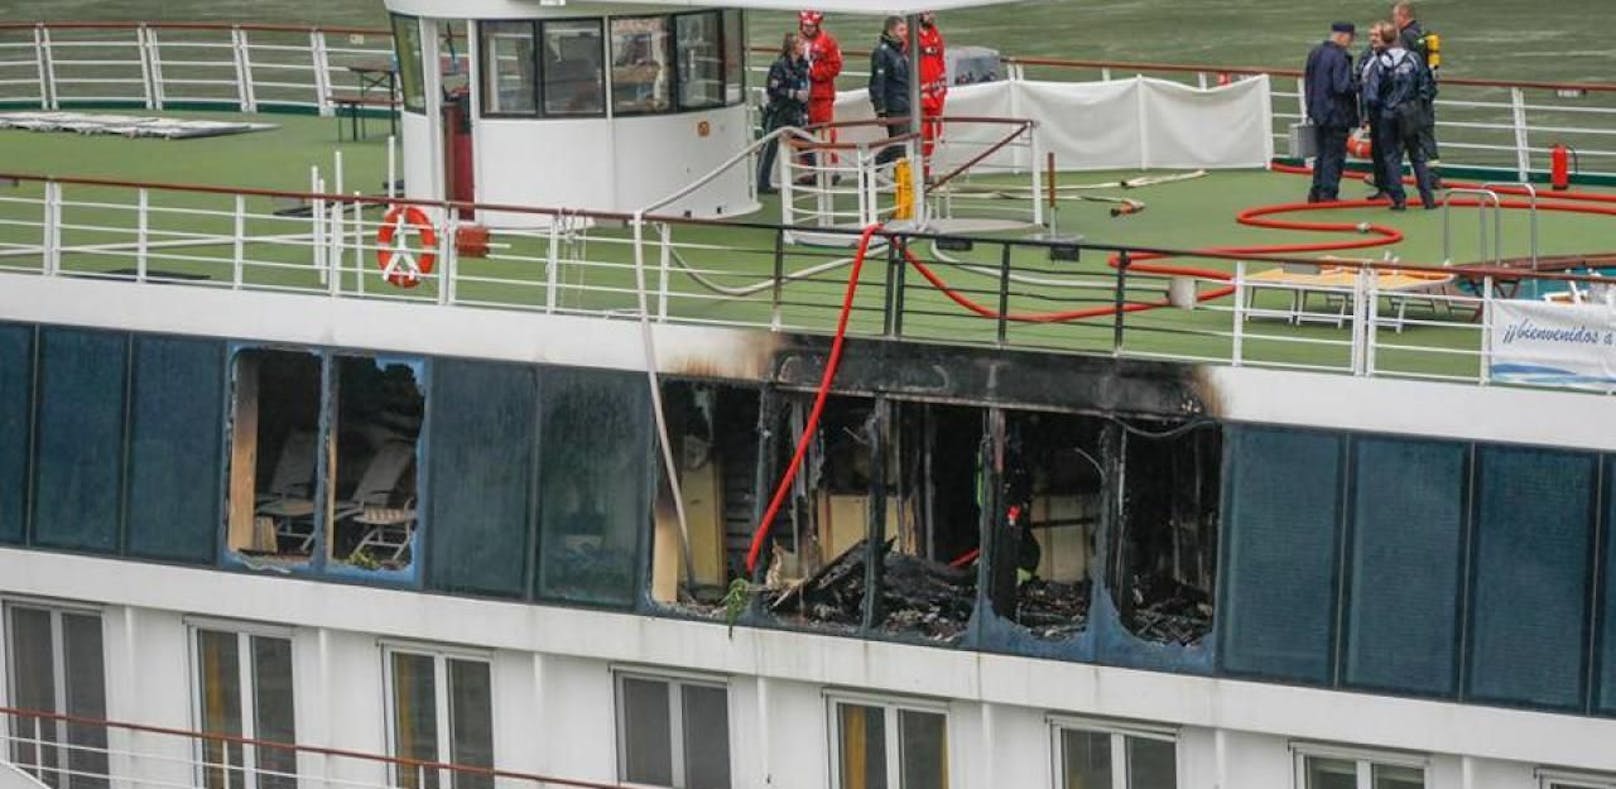 Brand auf Schiff: Darum brach das Feuer aus